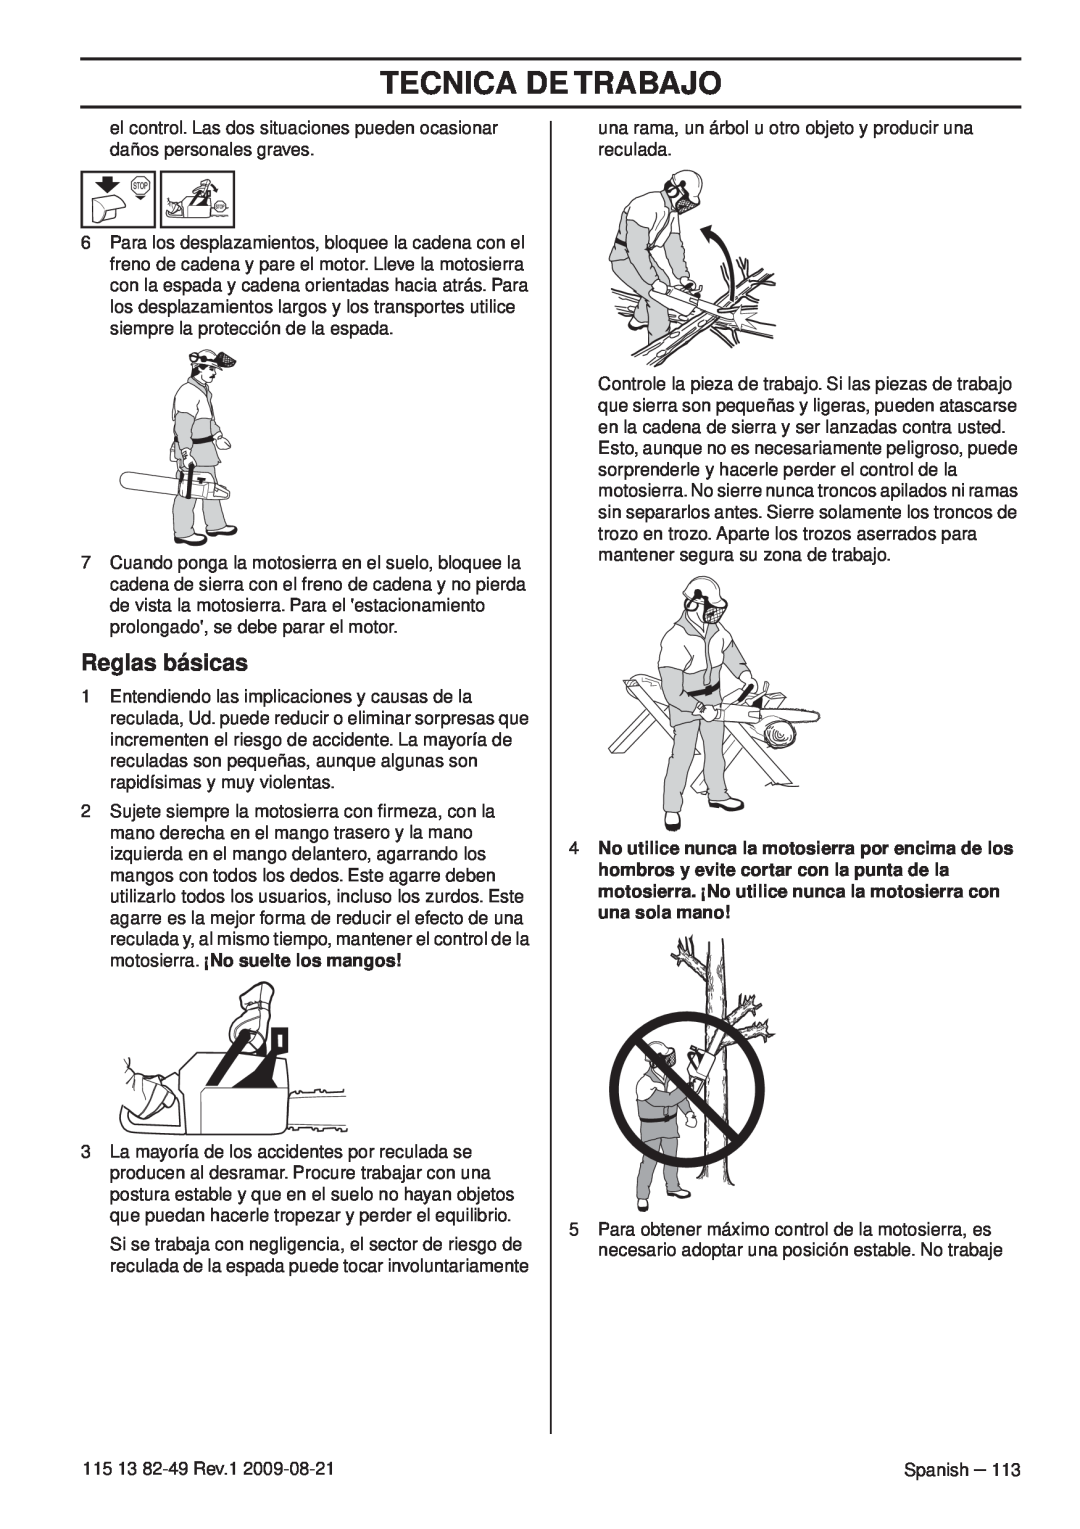 Husqvarna 115 13 82-49 manuel dutilisation Tecnica De Trabajo, Reglas básicas 